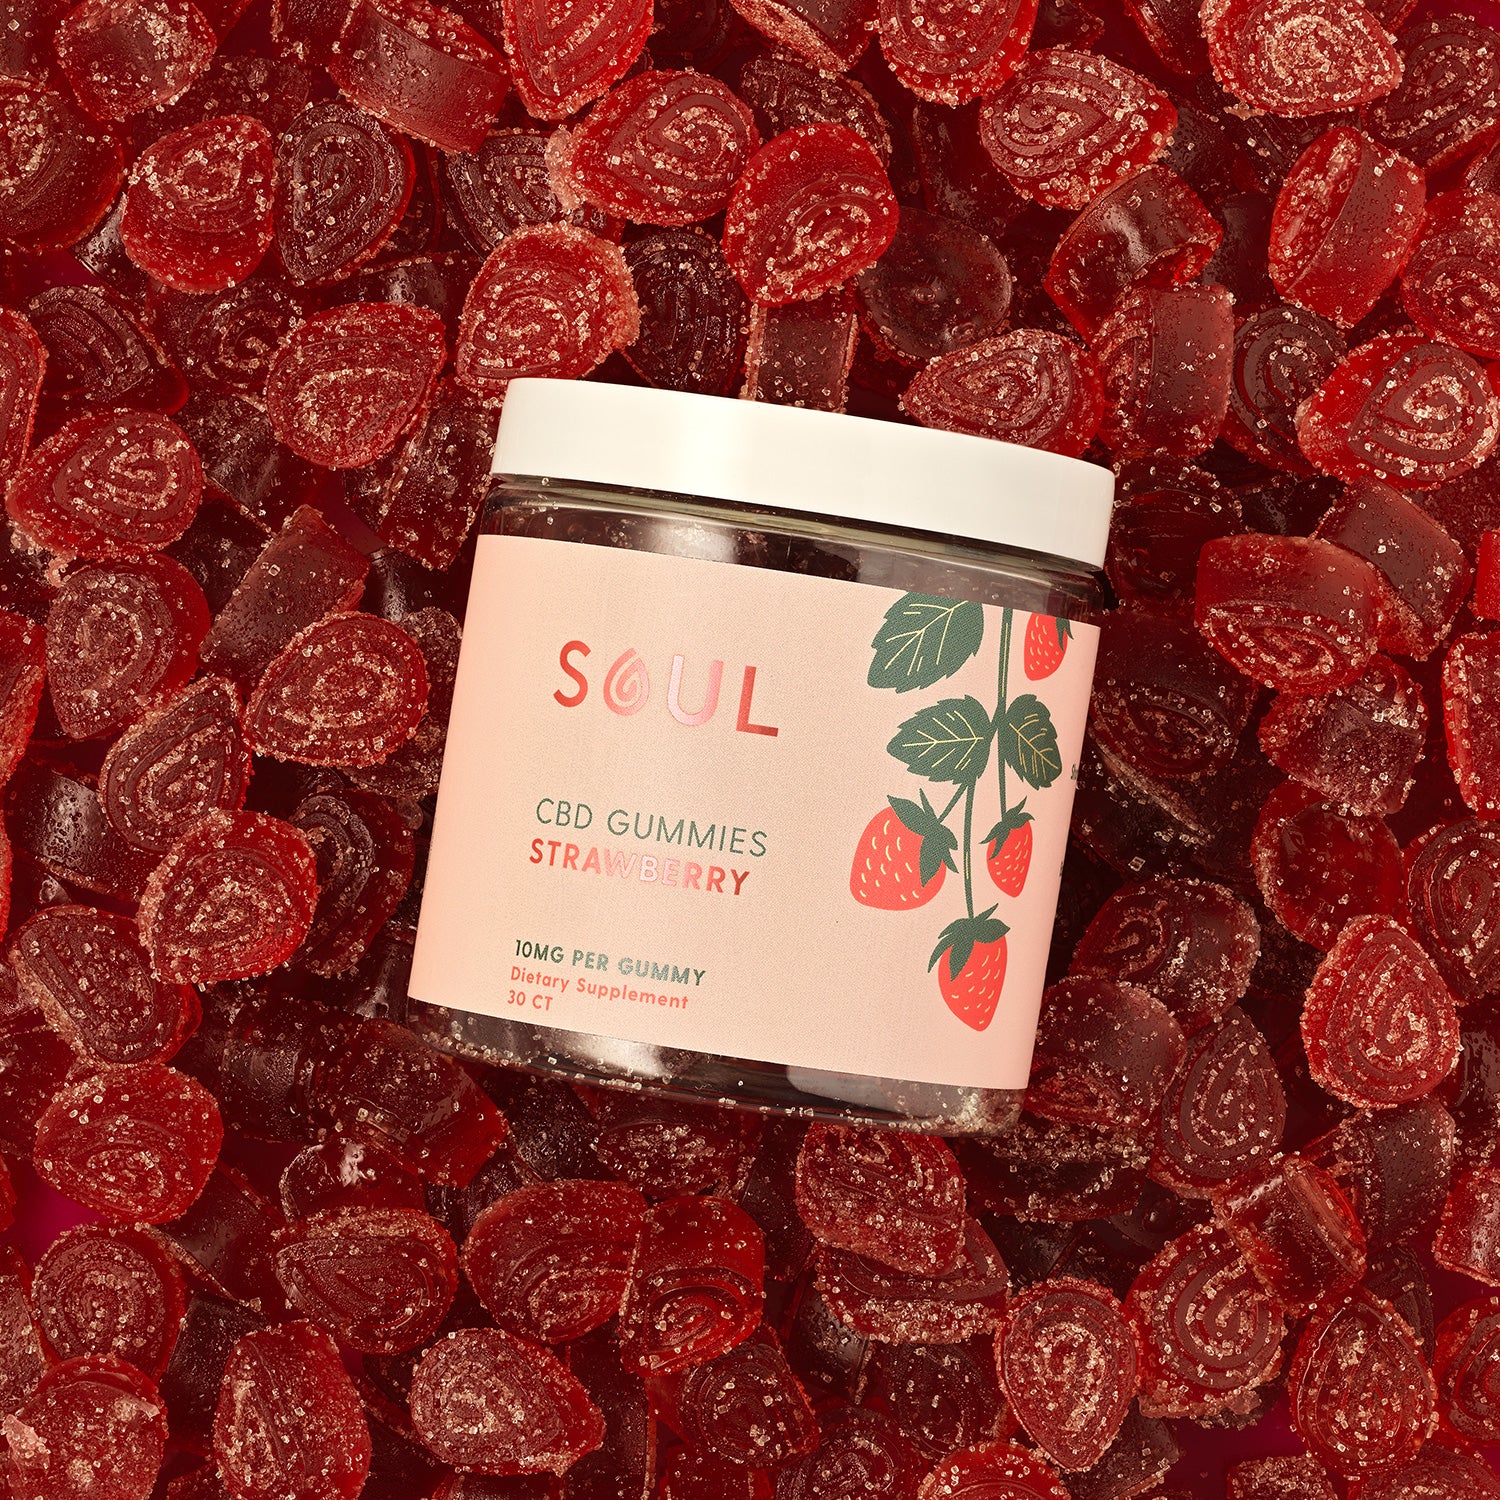 A jar of soul cbd gummies in strawberry flavor